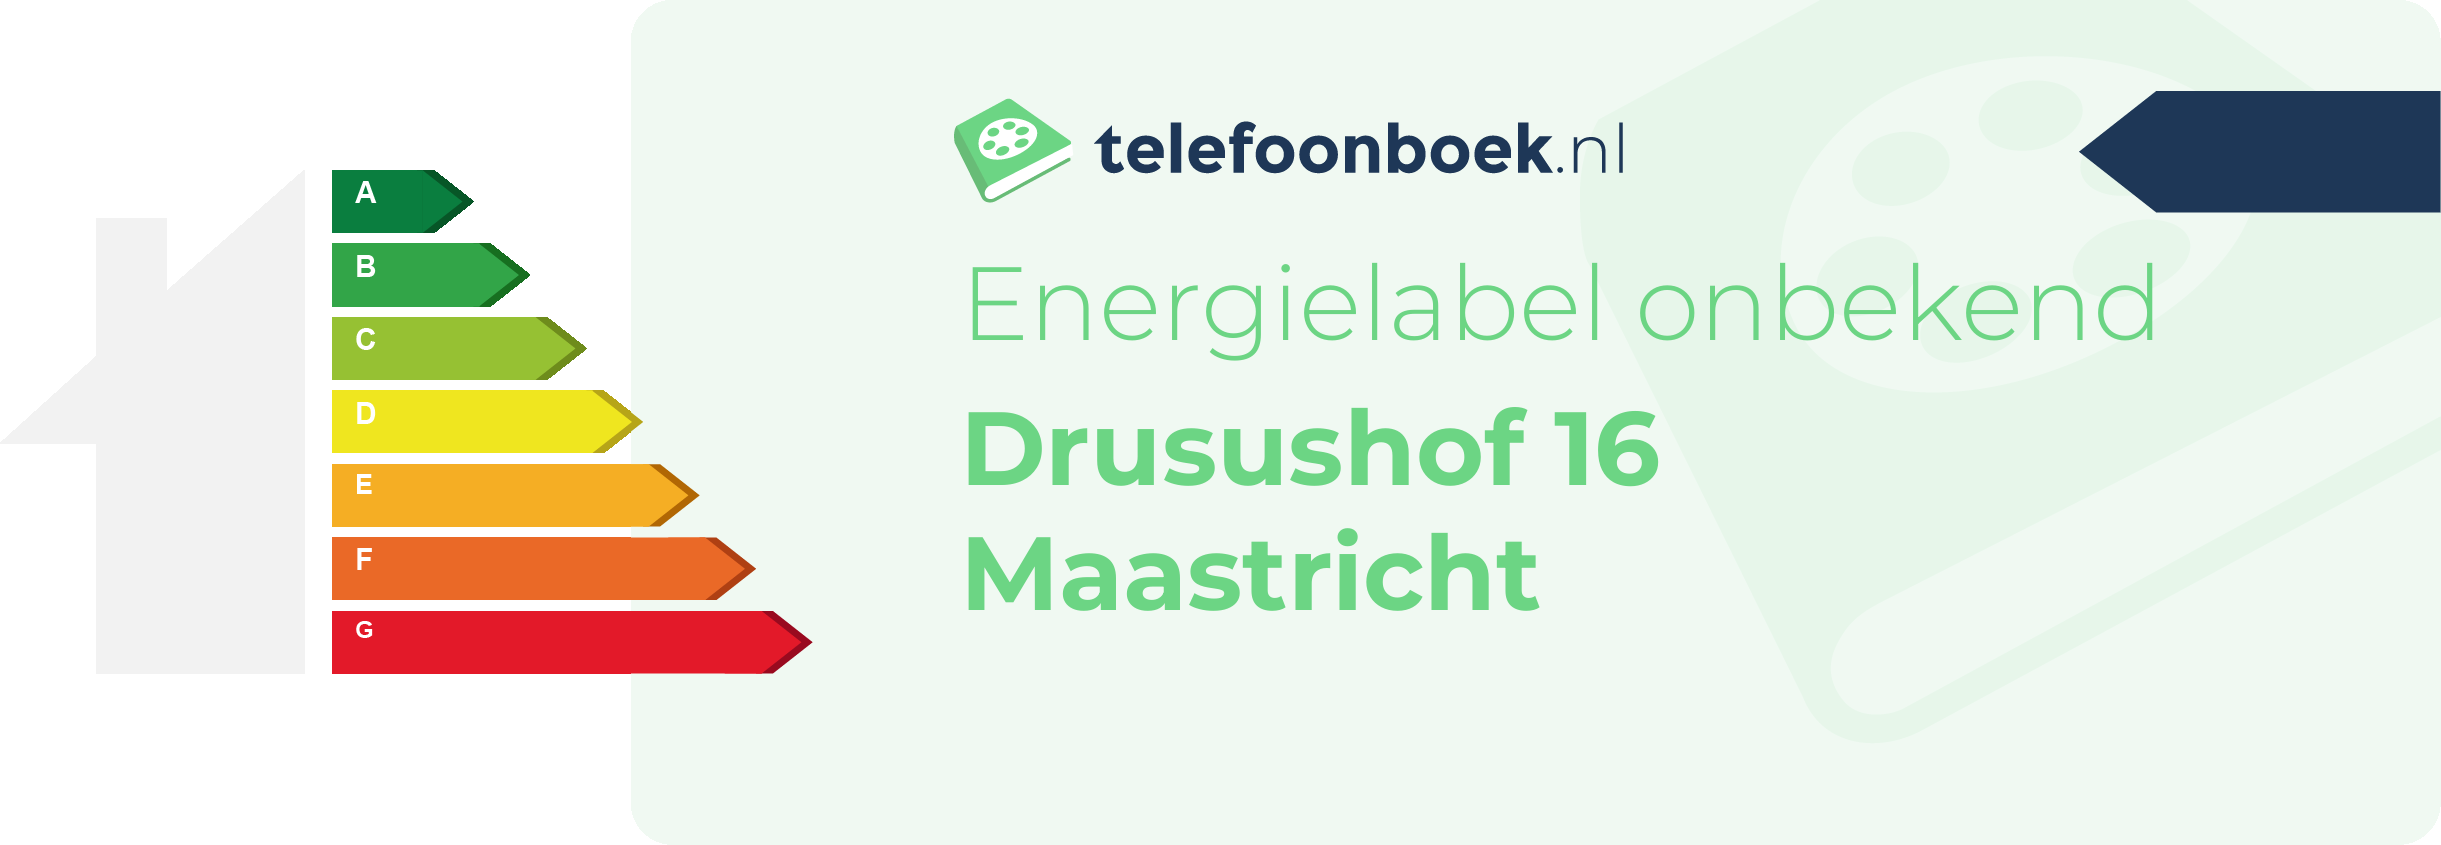 Energielabel Drusushof 16 Maastricht